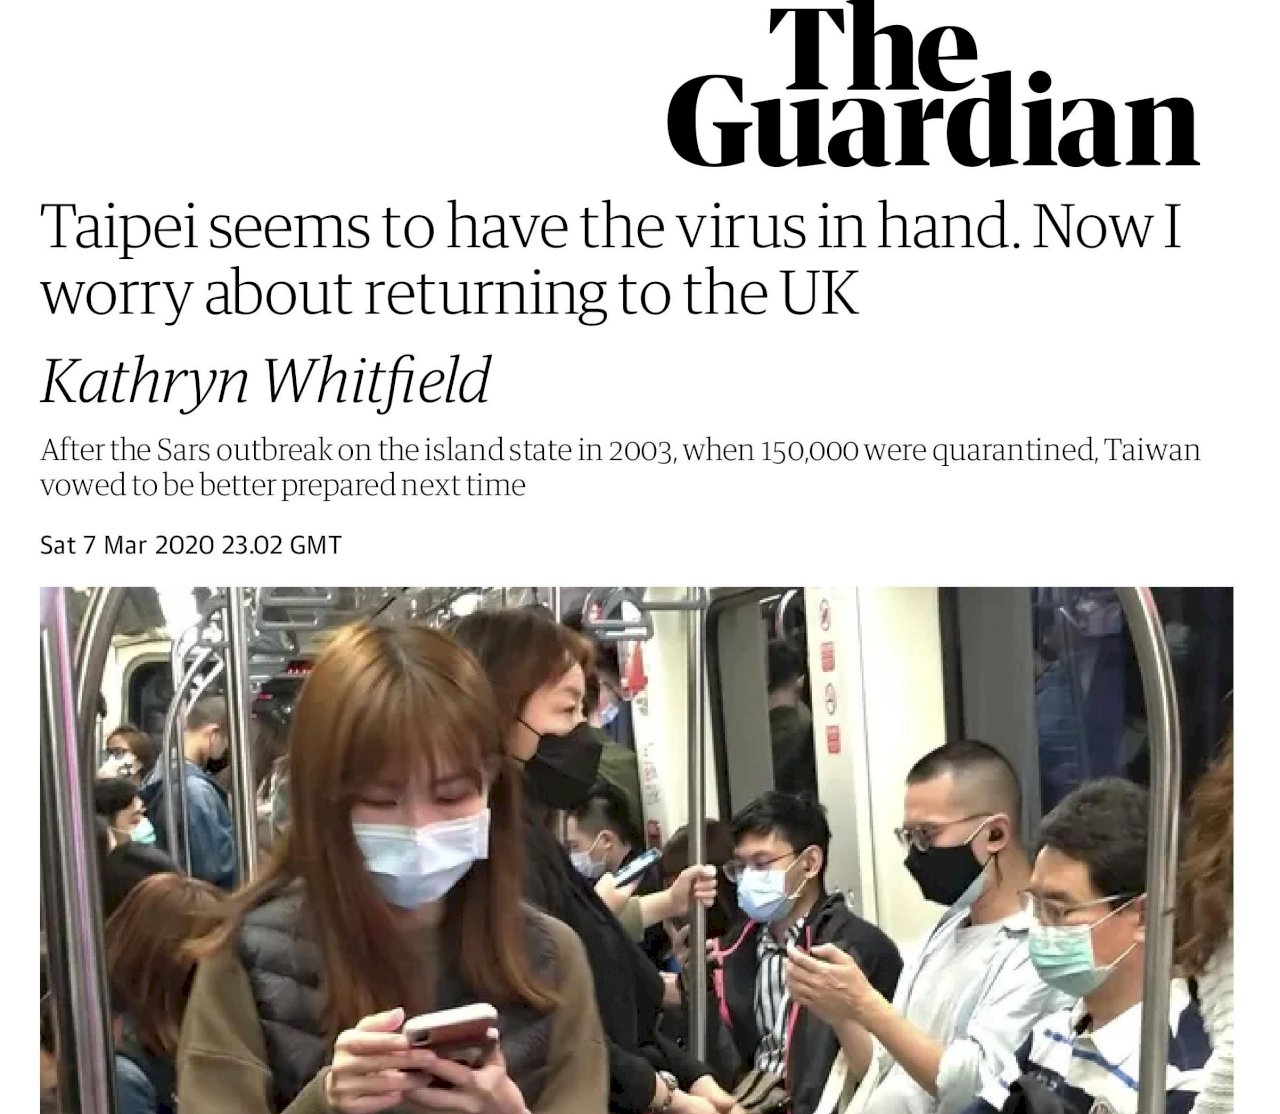 英記者見證台灣防疫確實 憂心返國反而不安全